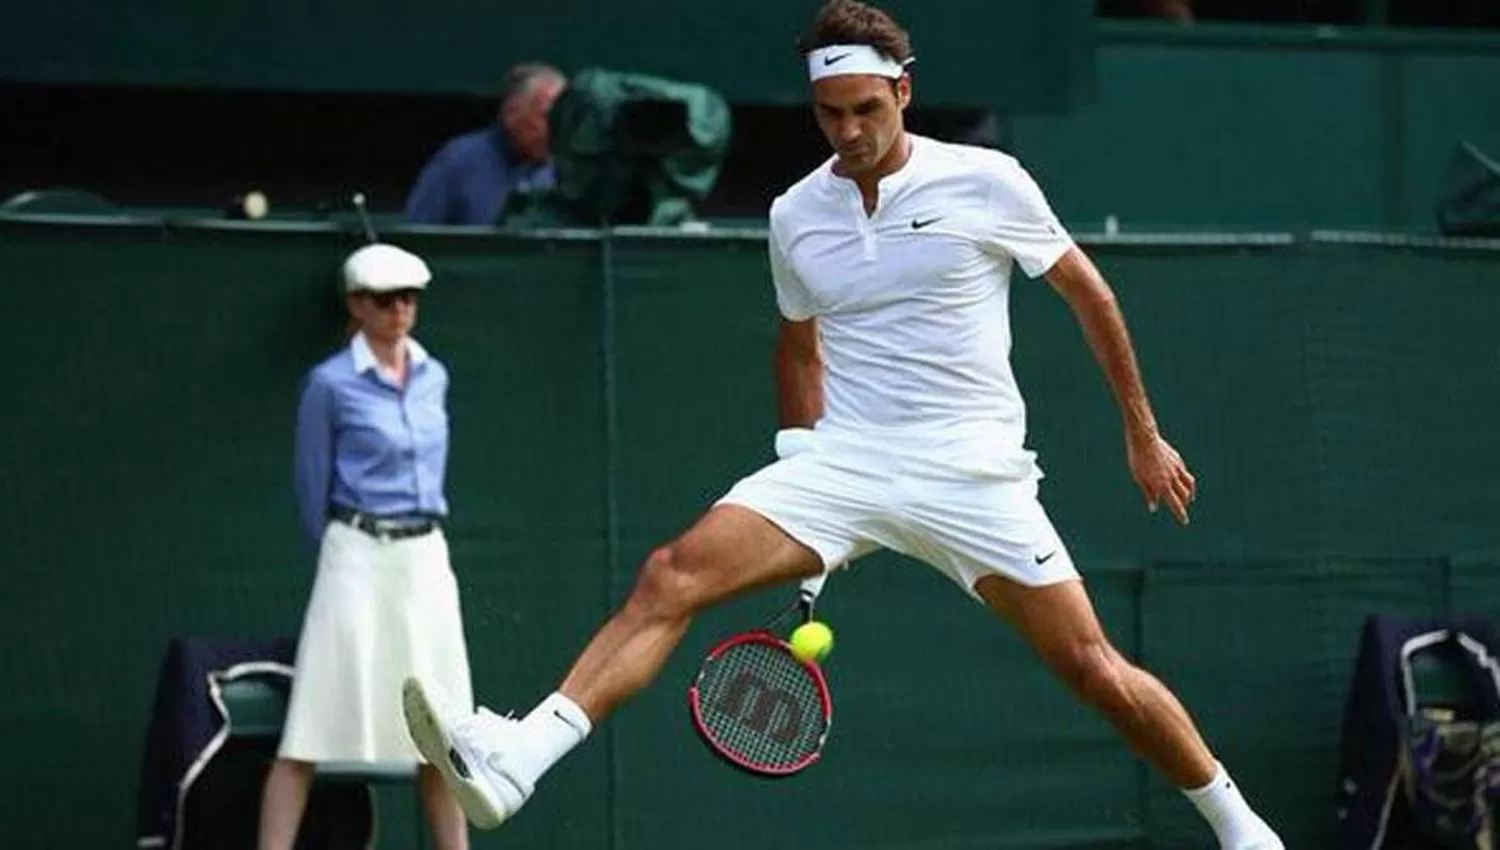 UNA LEYENDA. El suizo Federer tiene 40 años y acumuló 20 títulos de Grand Slam en su carrera.